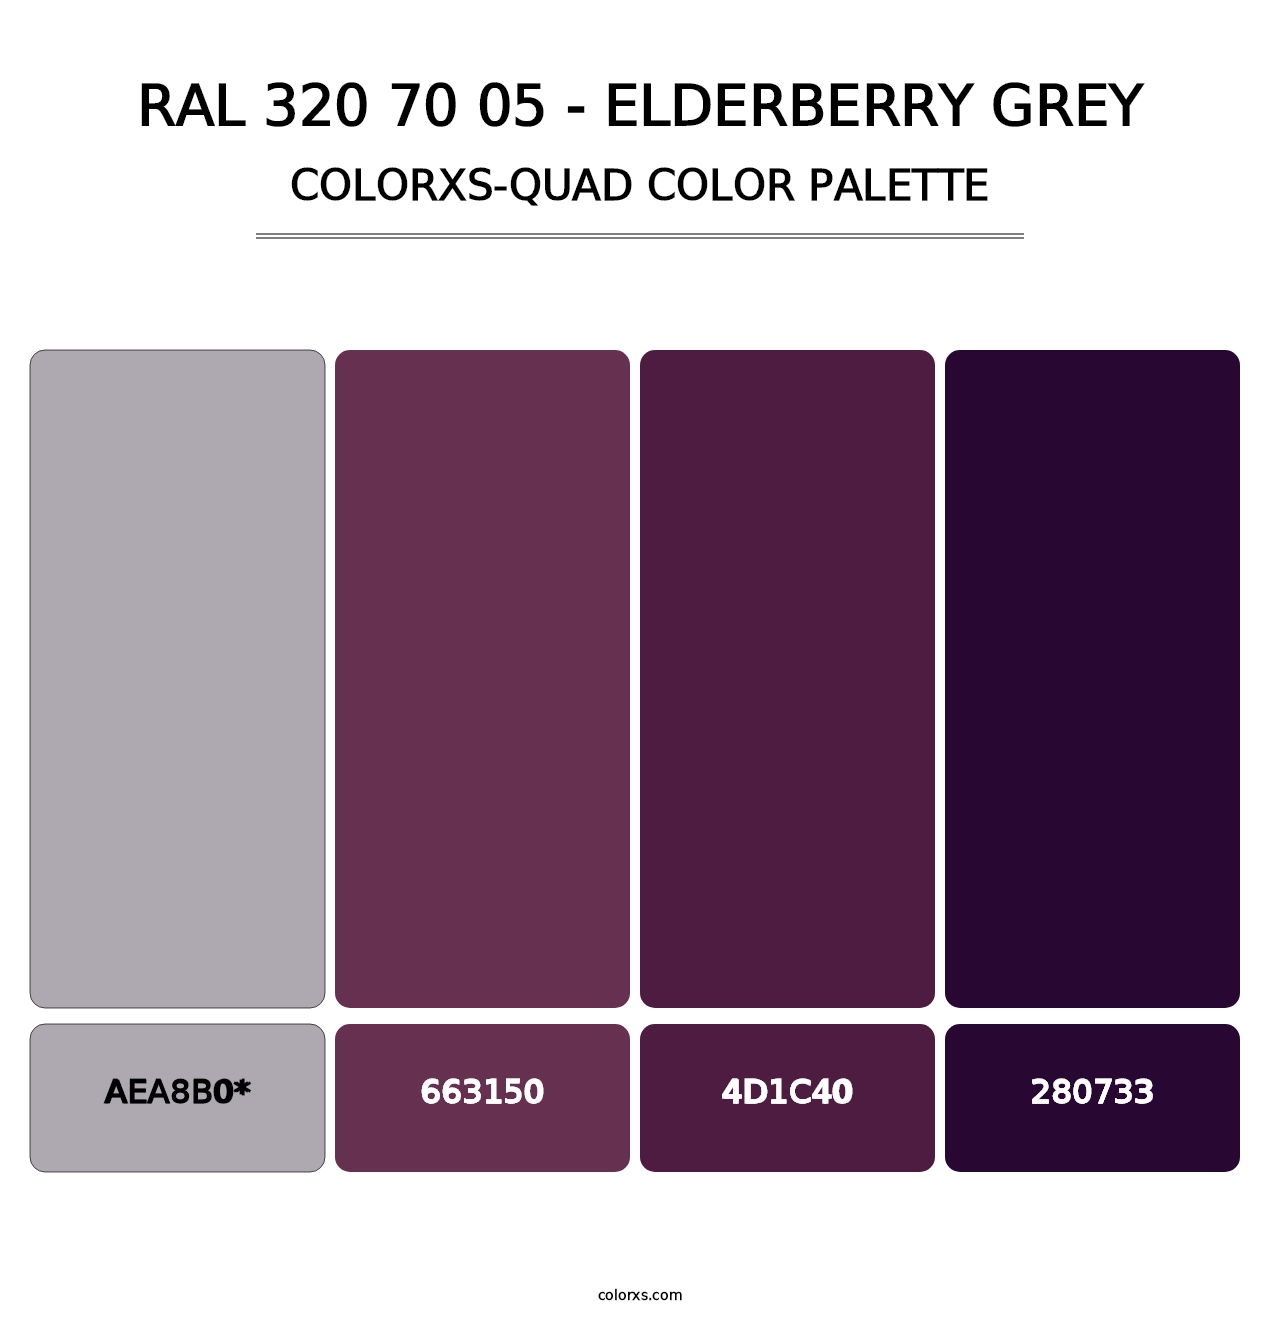 RAL 320 70 05 - Elderberry Grey - Colorxs Quad Palette